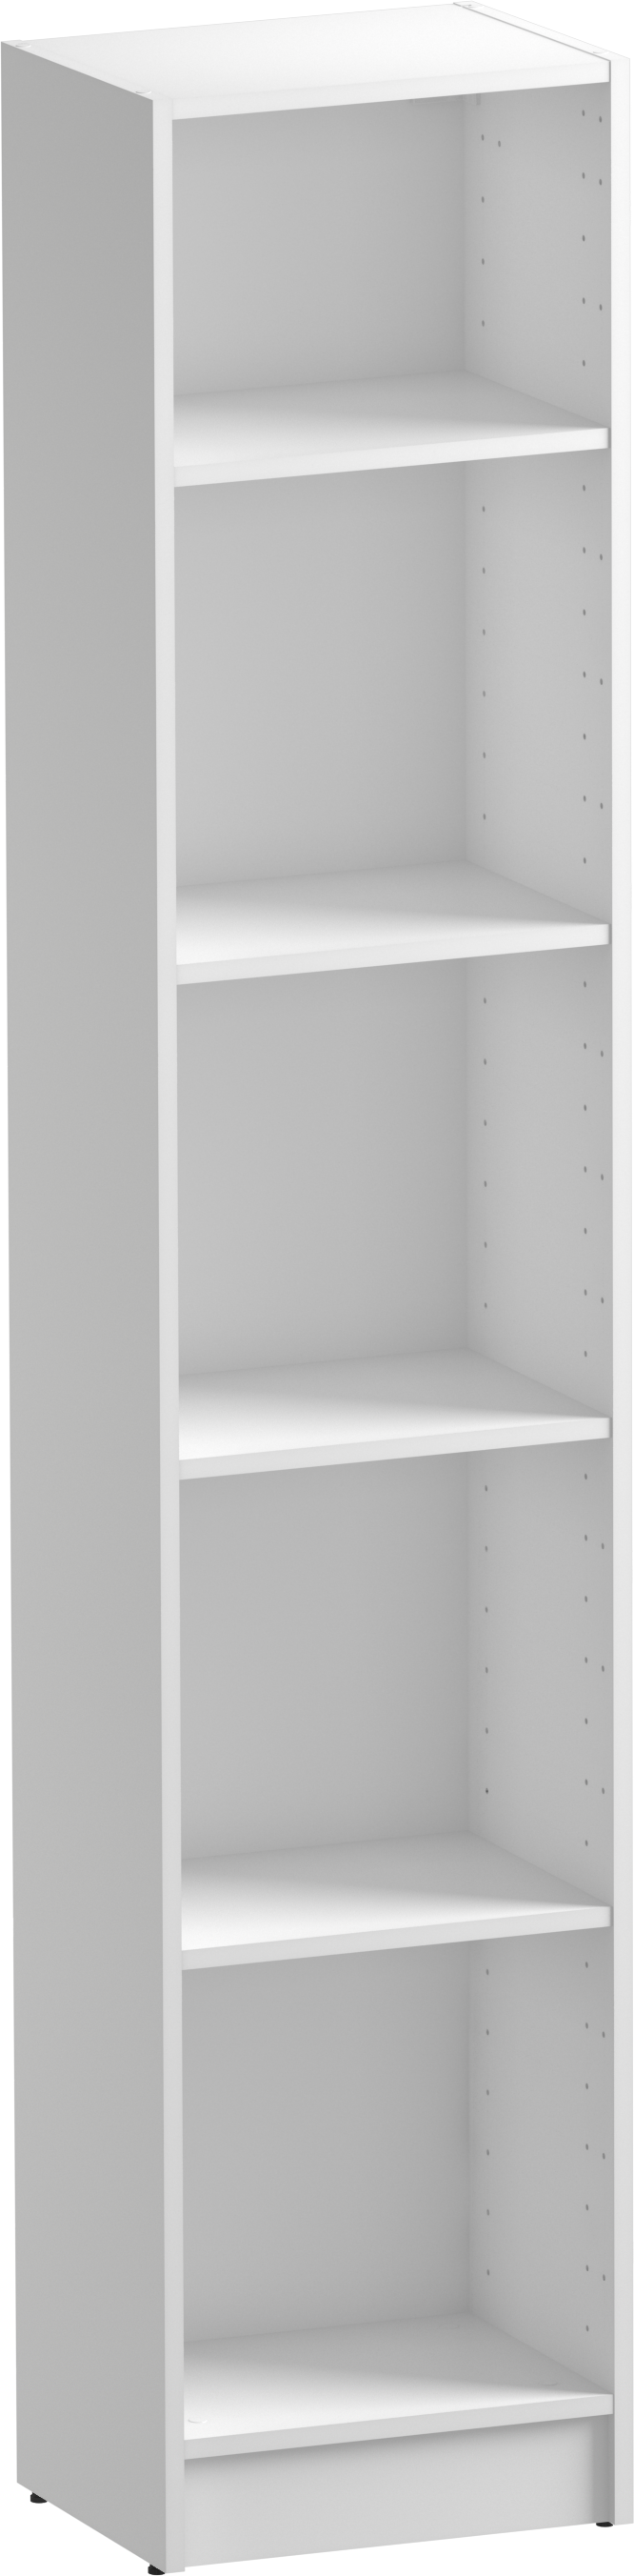 Librería estantería con cuatro baldas spaceo home blanco 40x200x30 cm